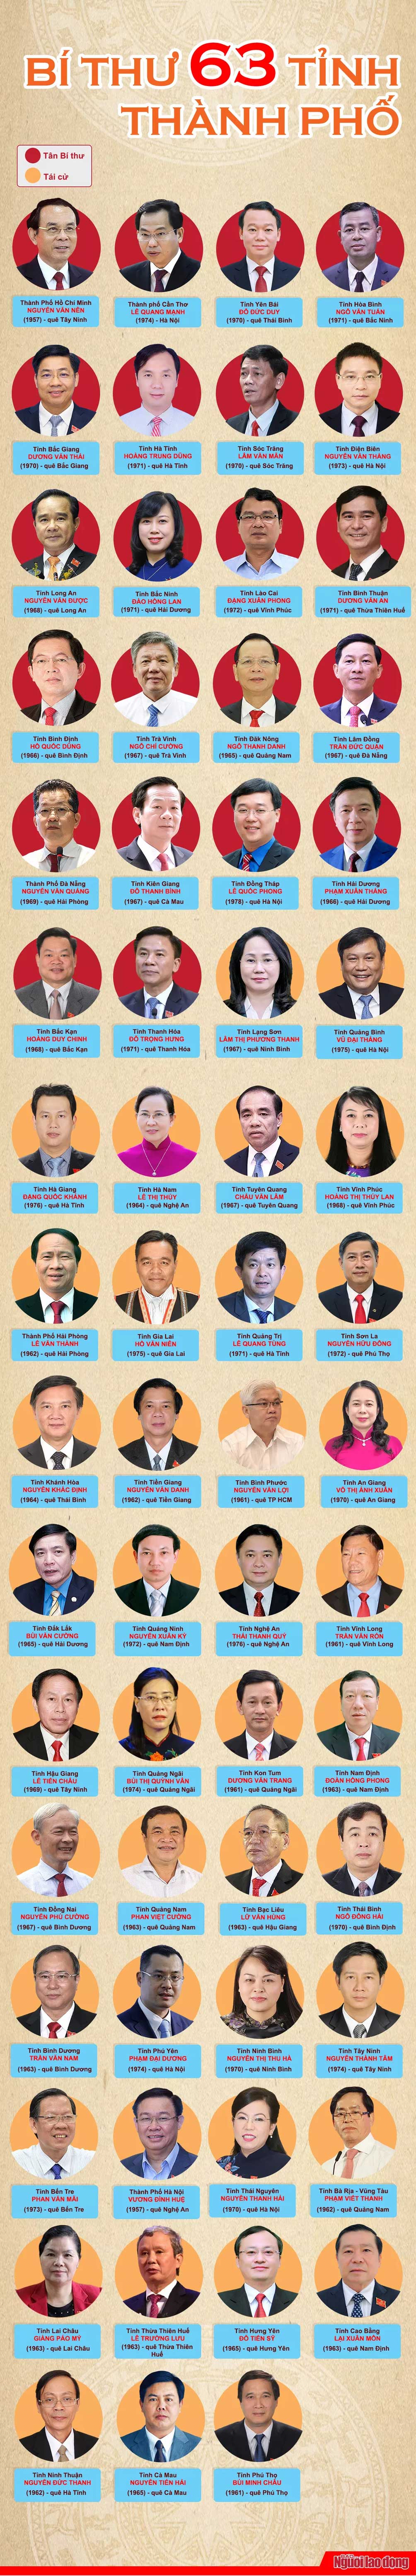 [Infographic] 63 bí thư Tỉnh ủy, Thành ủy nhiệm kỳ 2020-2025 - 1